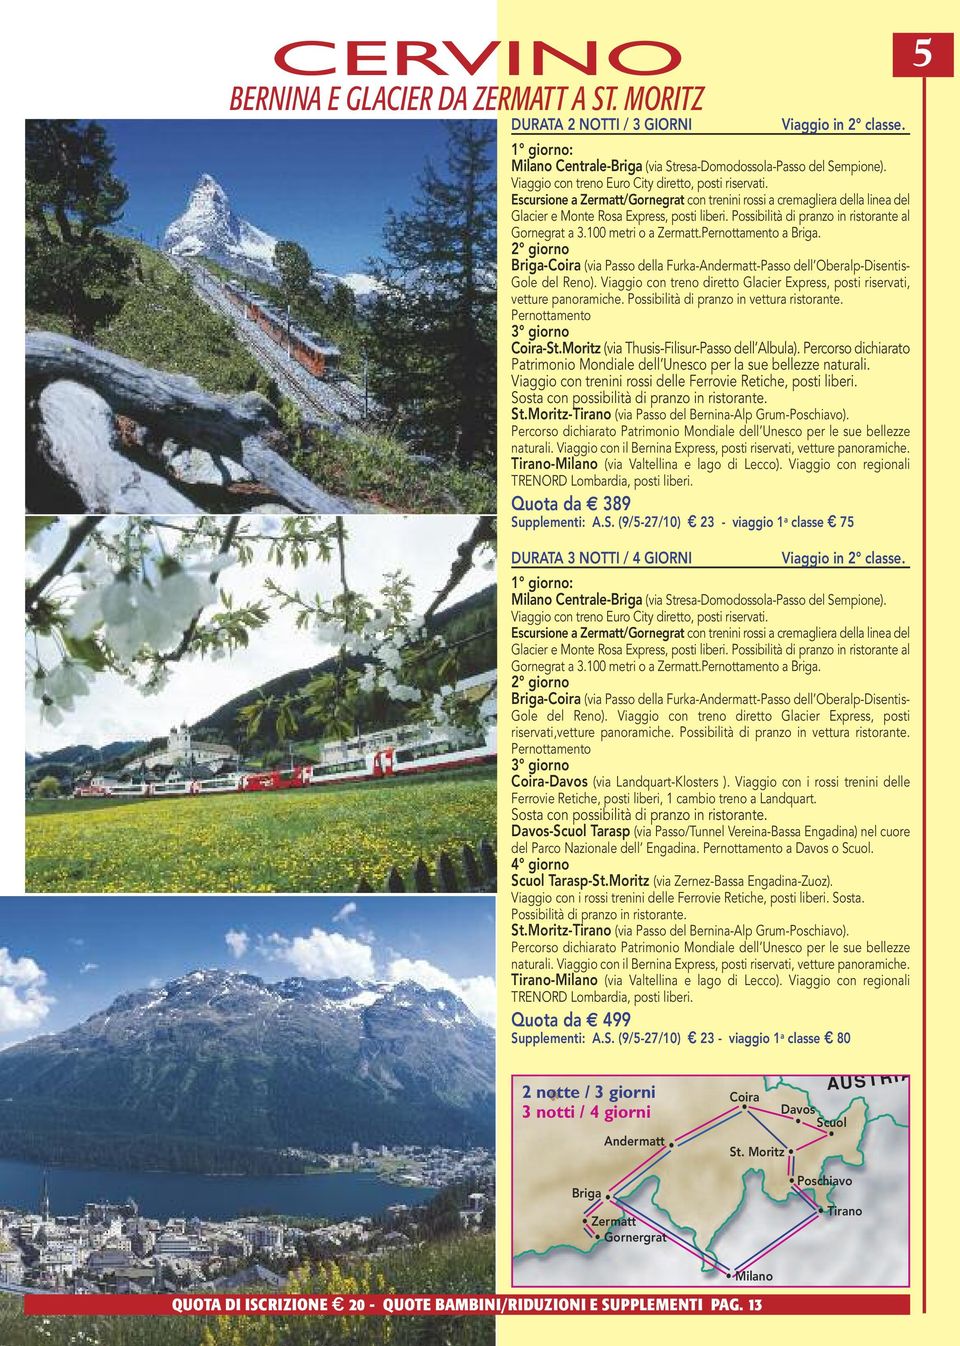 Possibilità di pranzo in ristorante al Gornegrat a 3.100 metri o a Zermatt.Pernottamento a Briga. 2 giorno Briga-Coira (via Passo della Furka-Andermatt-Passo dell Oberalp-Disentis- Gole del Reno).